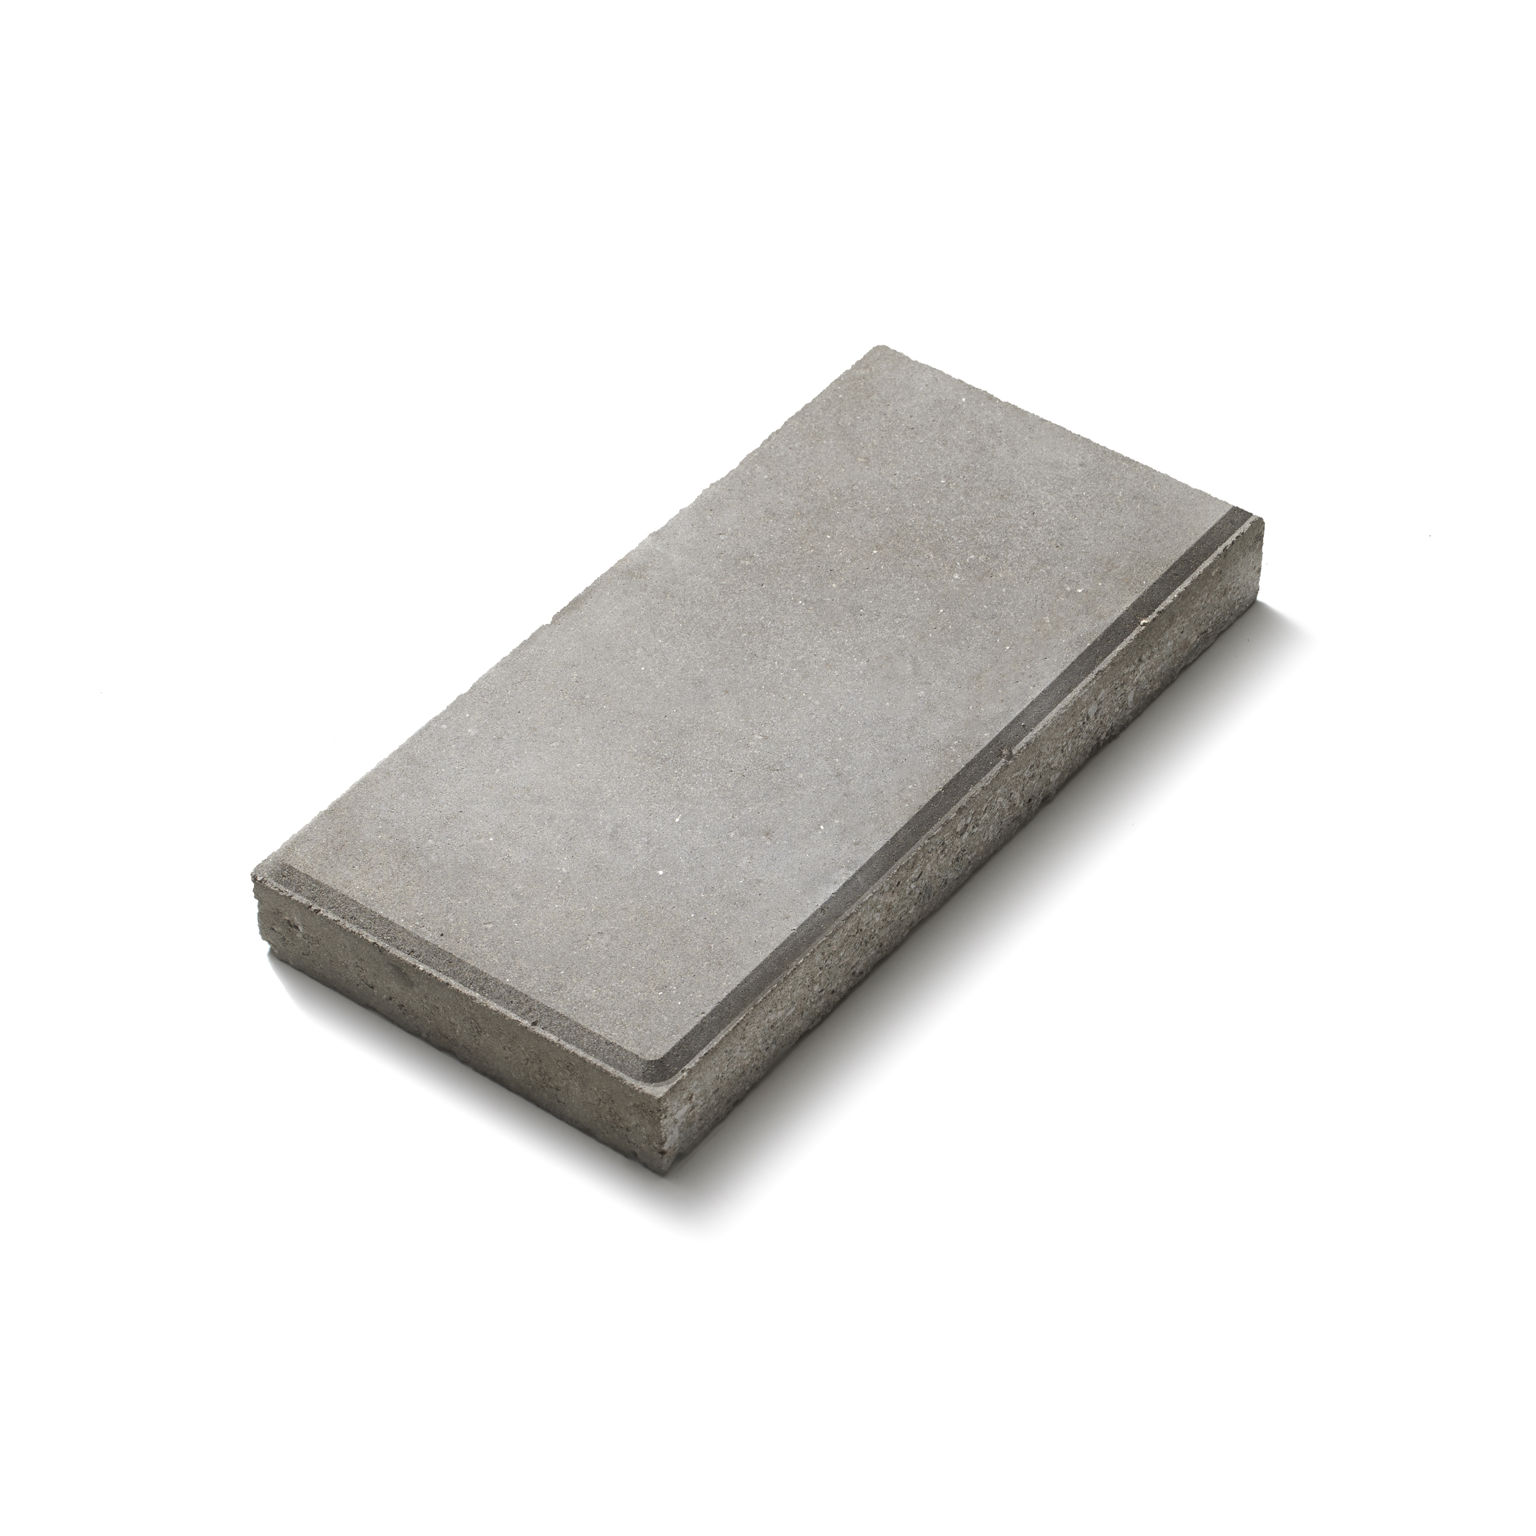 Slät platta i betong med fasade kanter för markläggning.